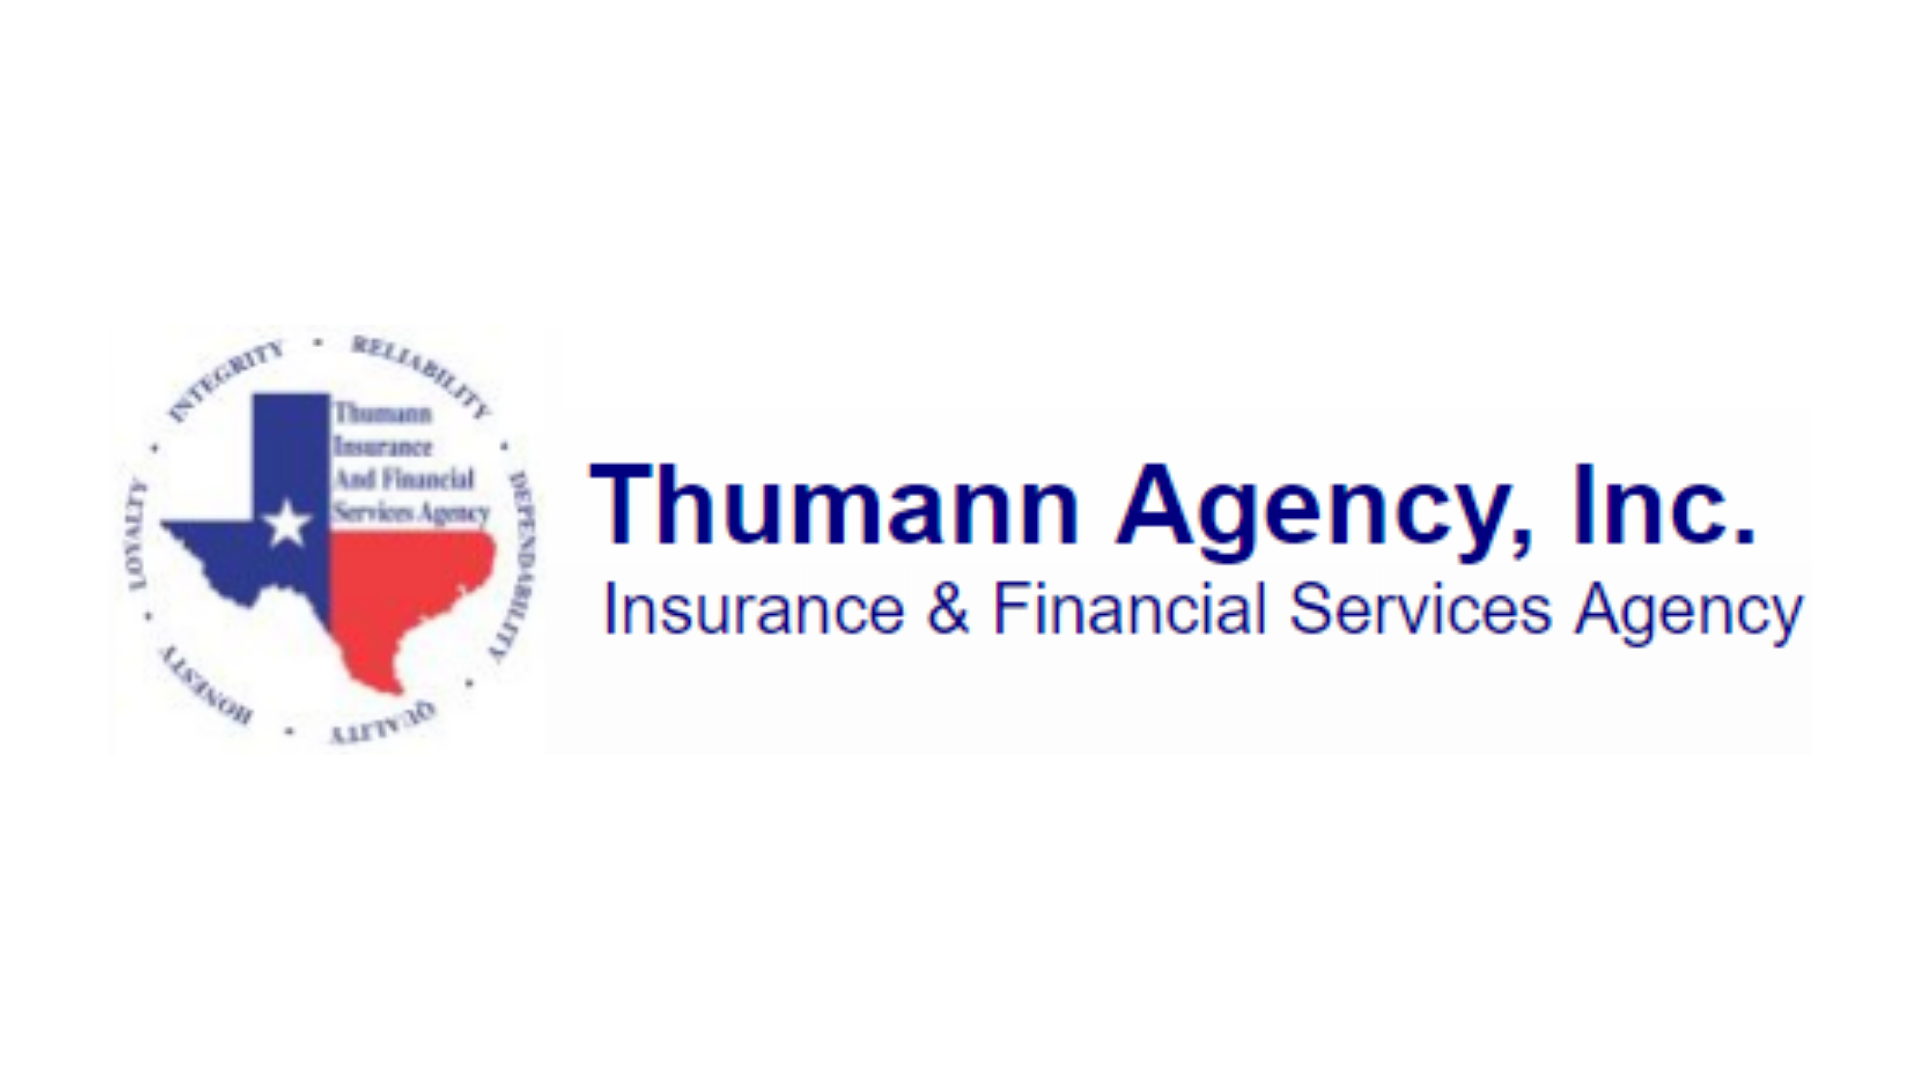 Thumann Agency, Inc